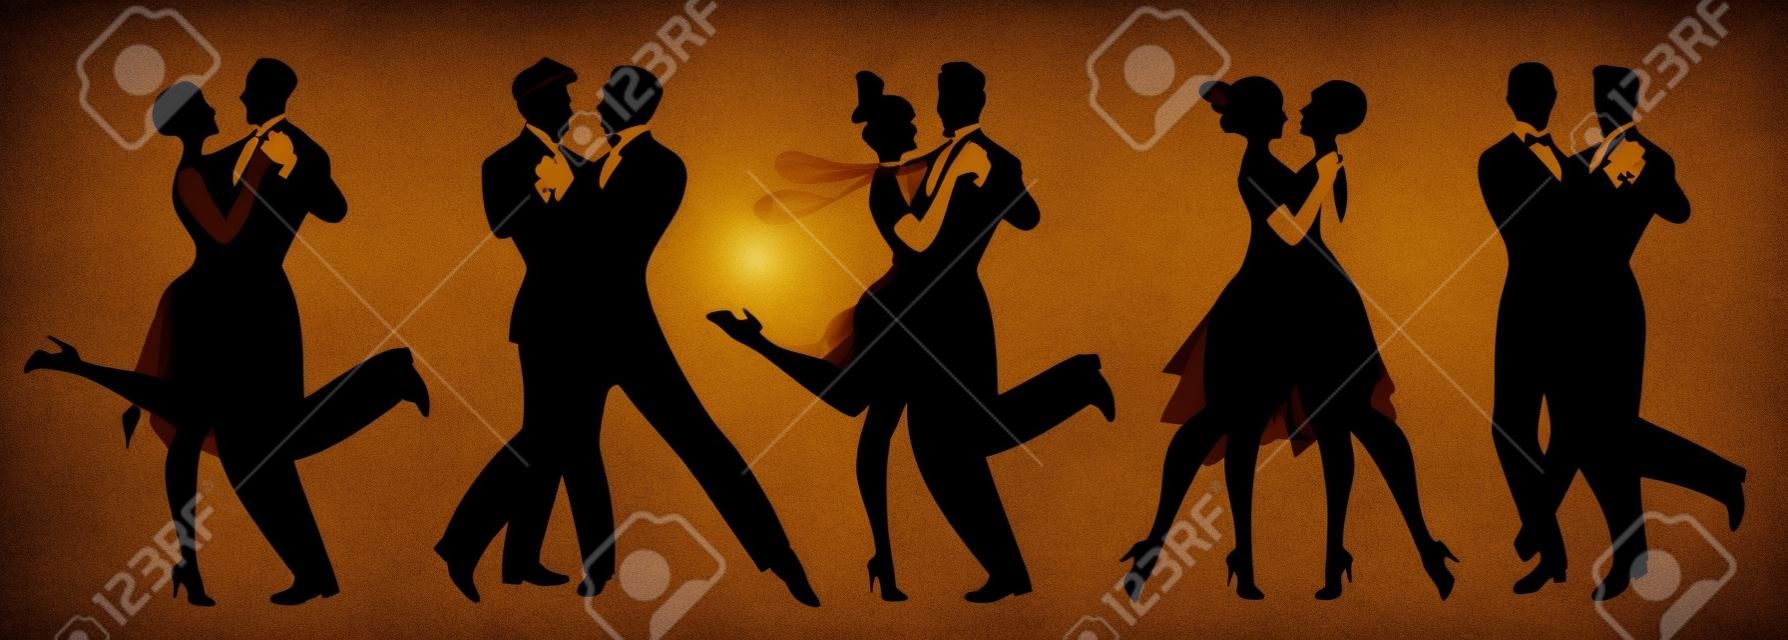 Silhouettes van vijf koppels die kleding dragen in de stijl van de jaren twintig dansende retro muziek